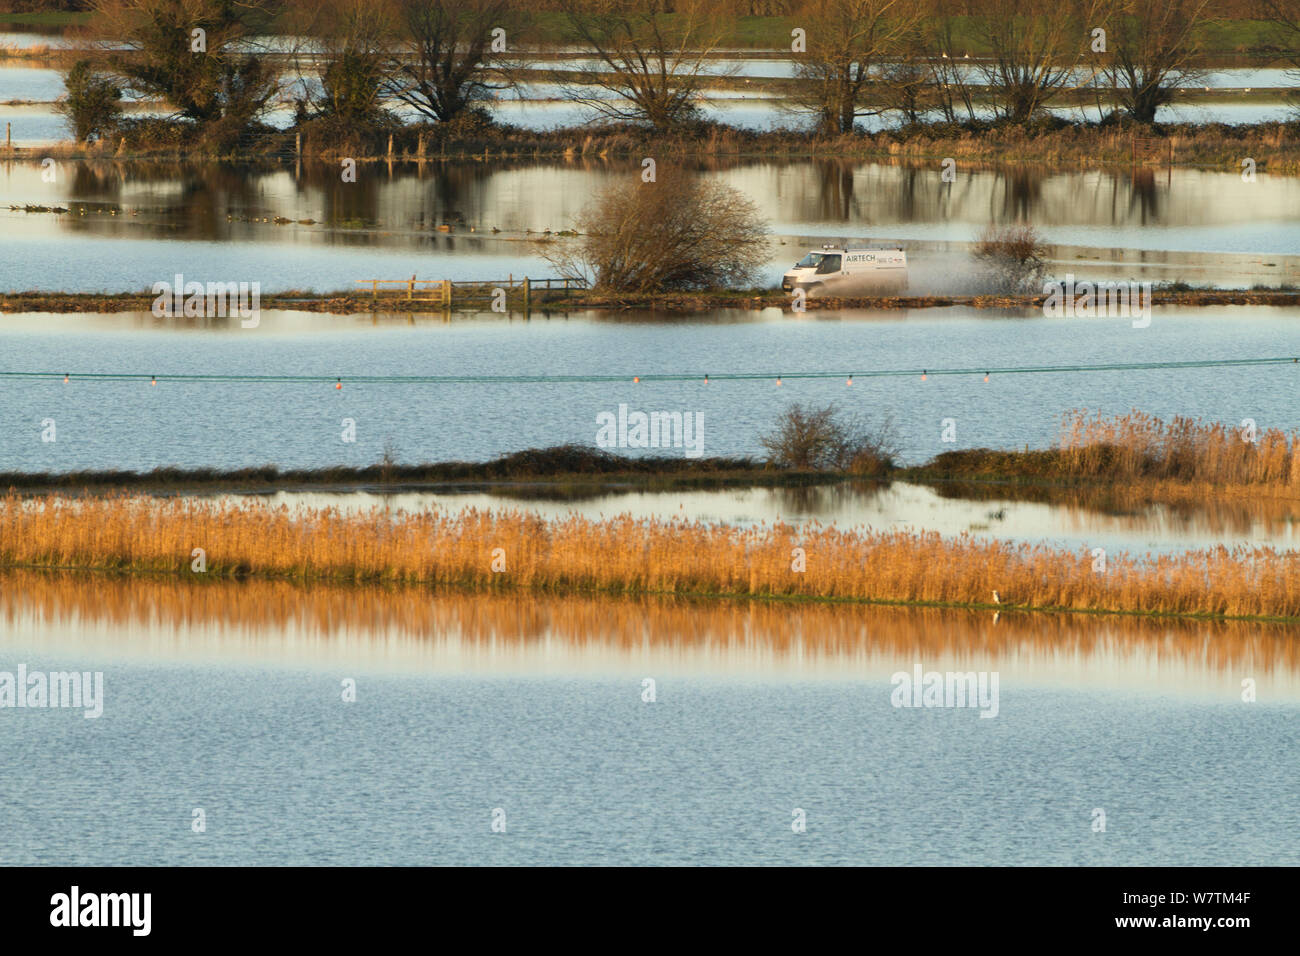 Van en passant par les inondations dans les niveaux de Somerset Janvier 2014 près de Burrowbridge, Angleterre, Royaume-Uni, 11 janvier 2014. Banque D'Images